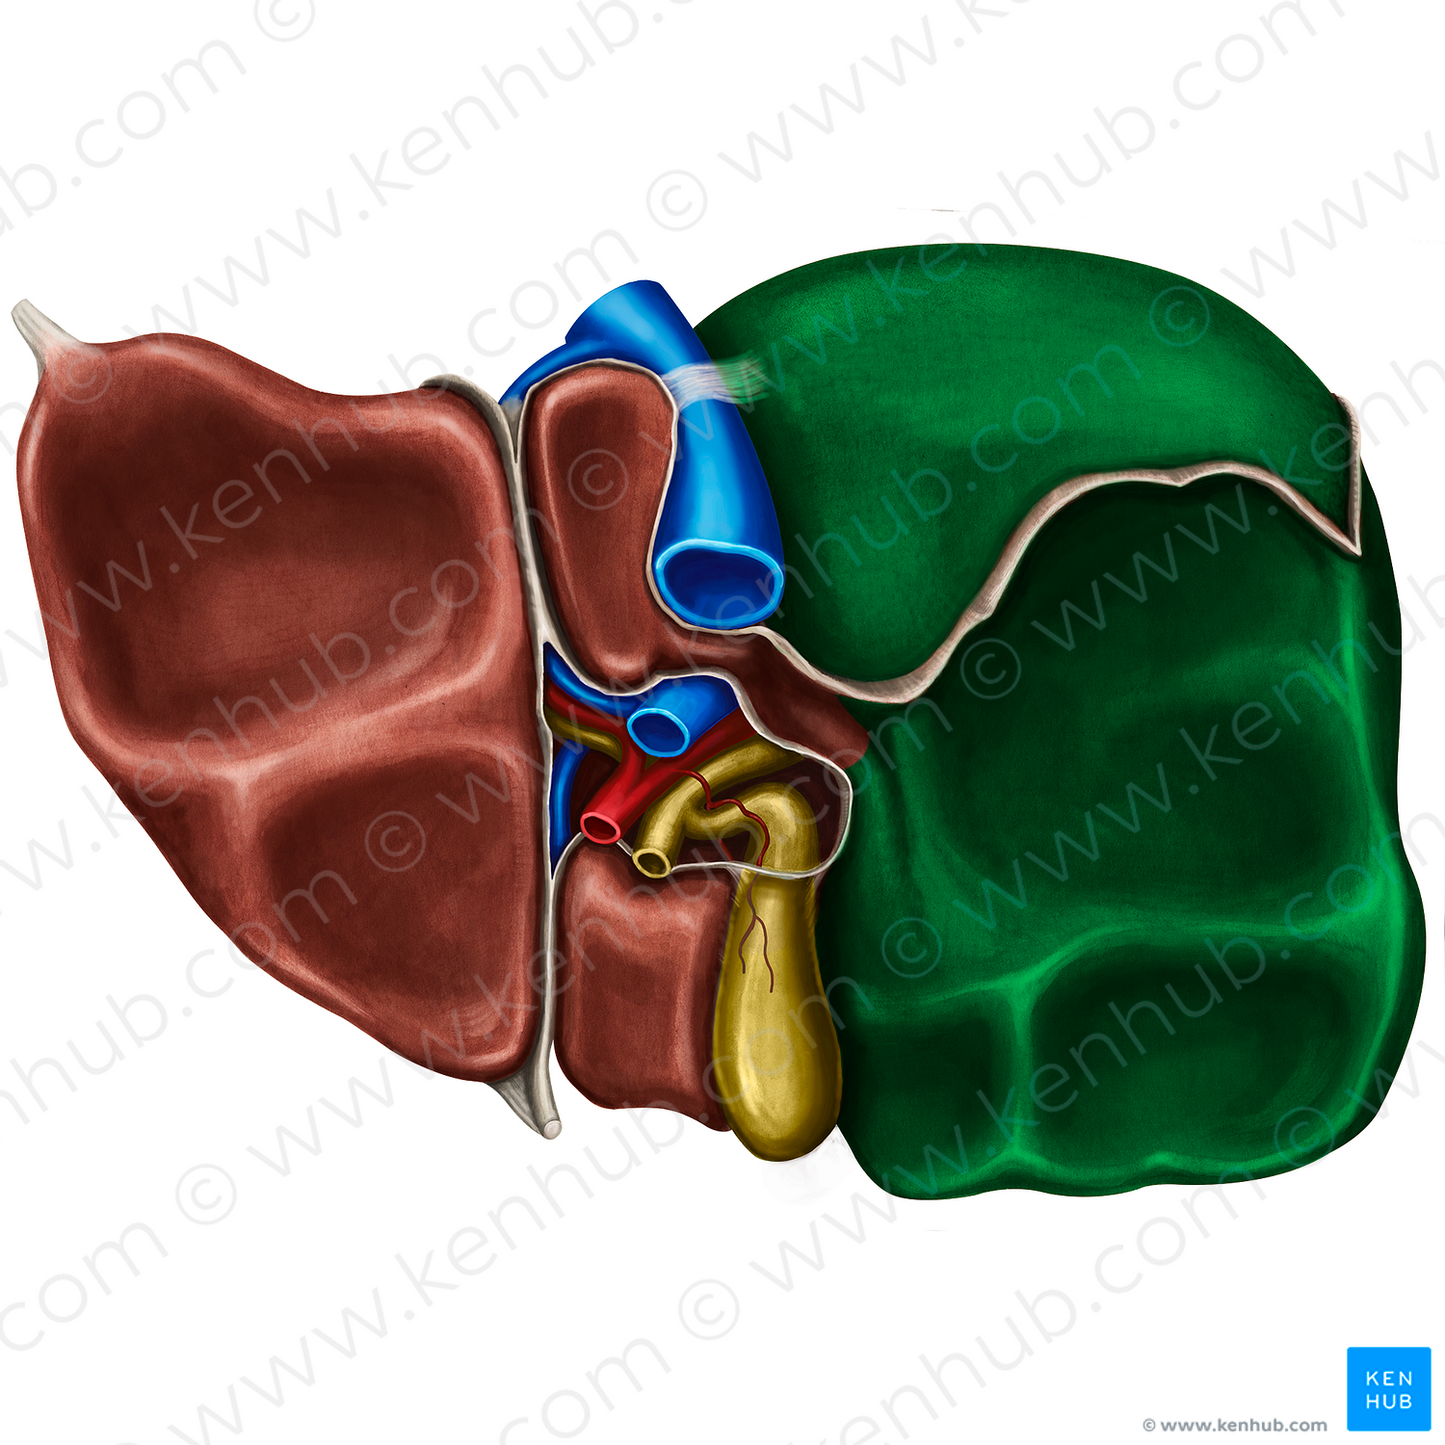 Right lobe of liver (#4793)